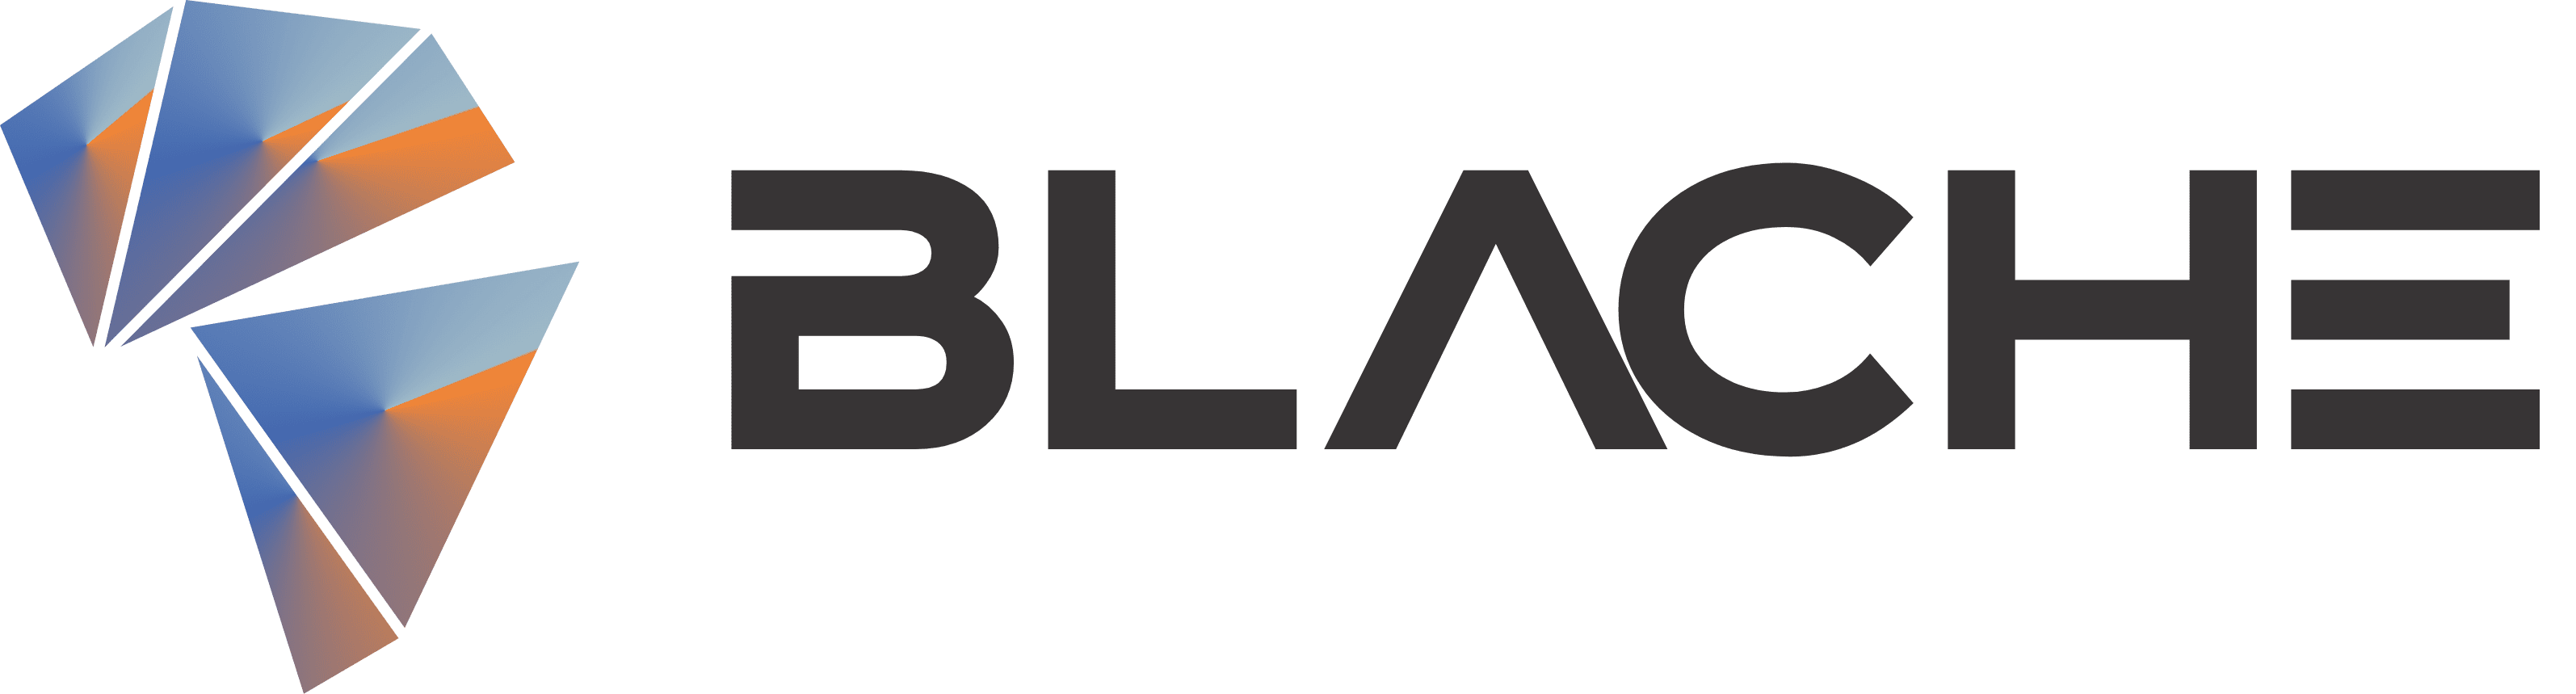 BLACHE_LANDSCAPE_COL-BLACK